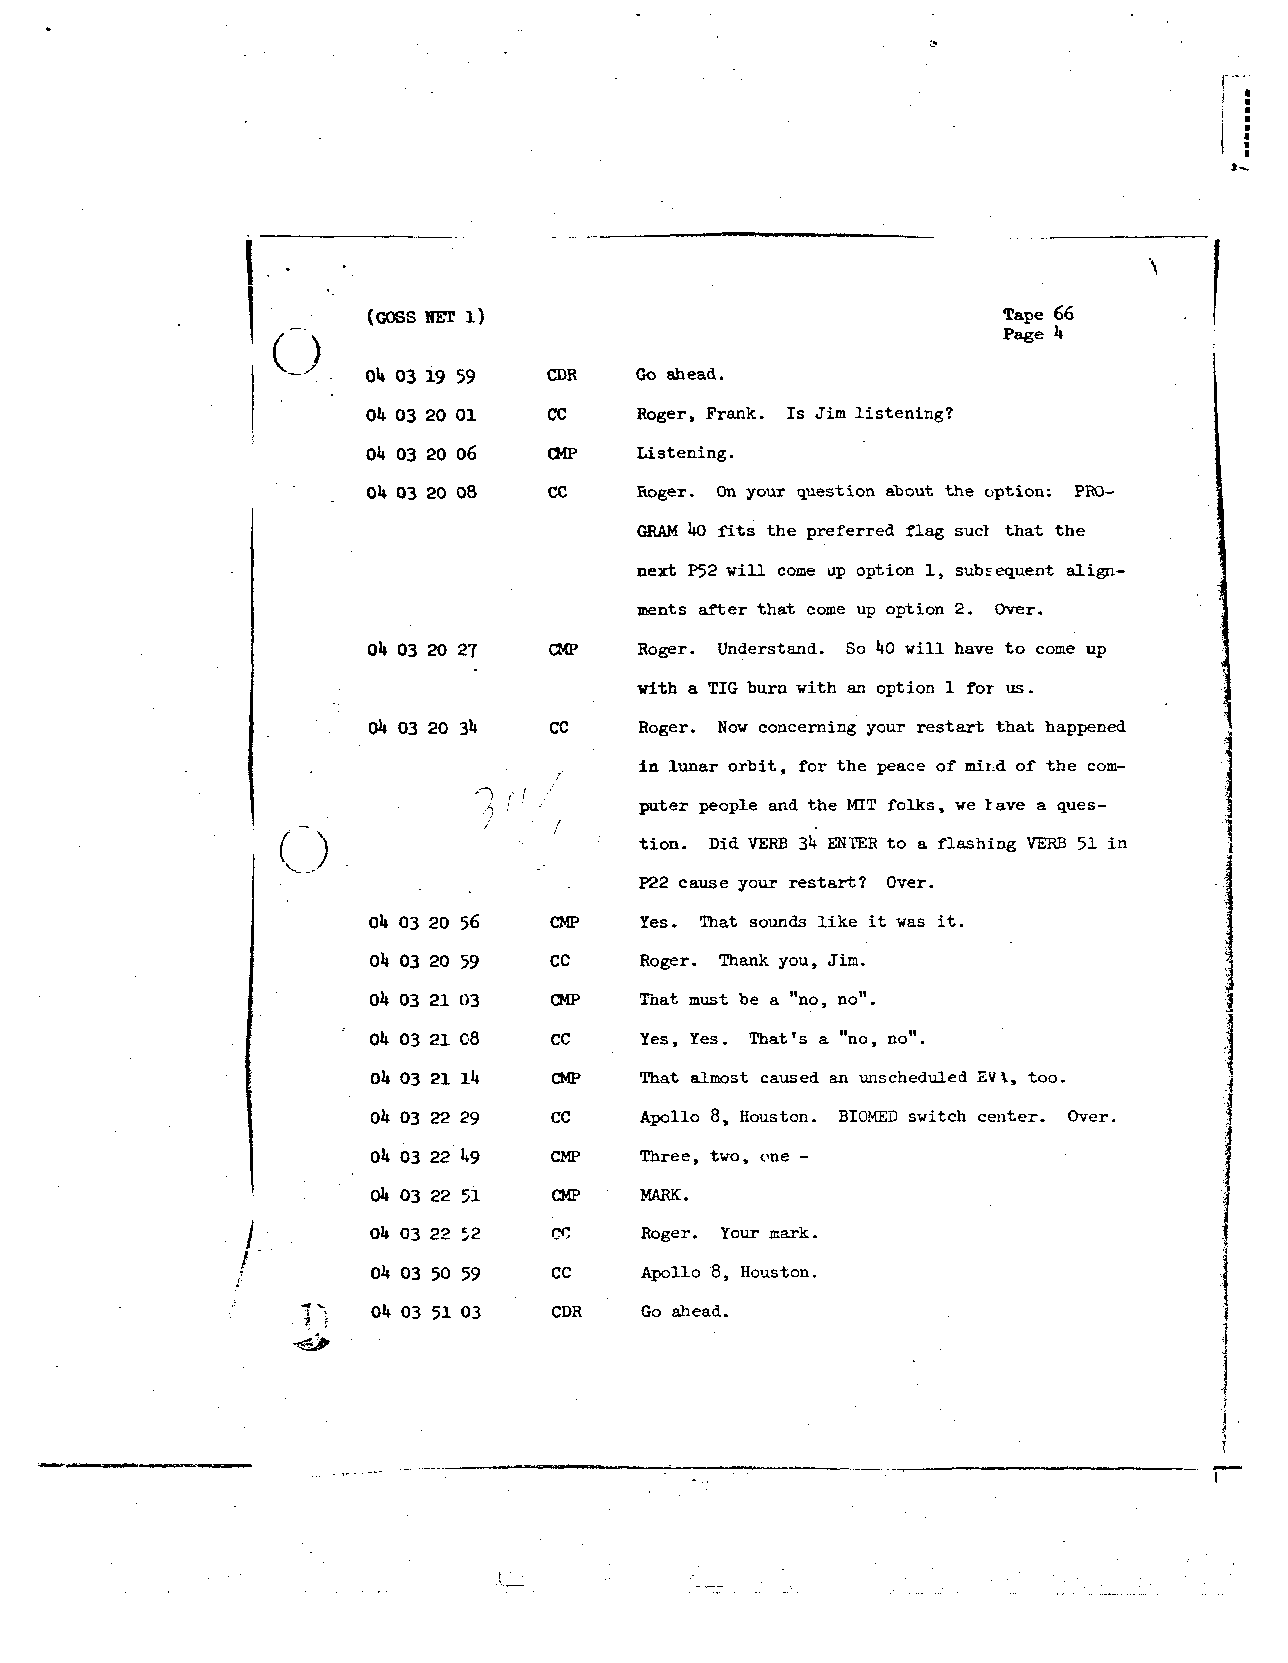 Page 523 of Apollo 8’s original transcript